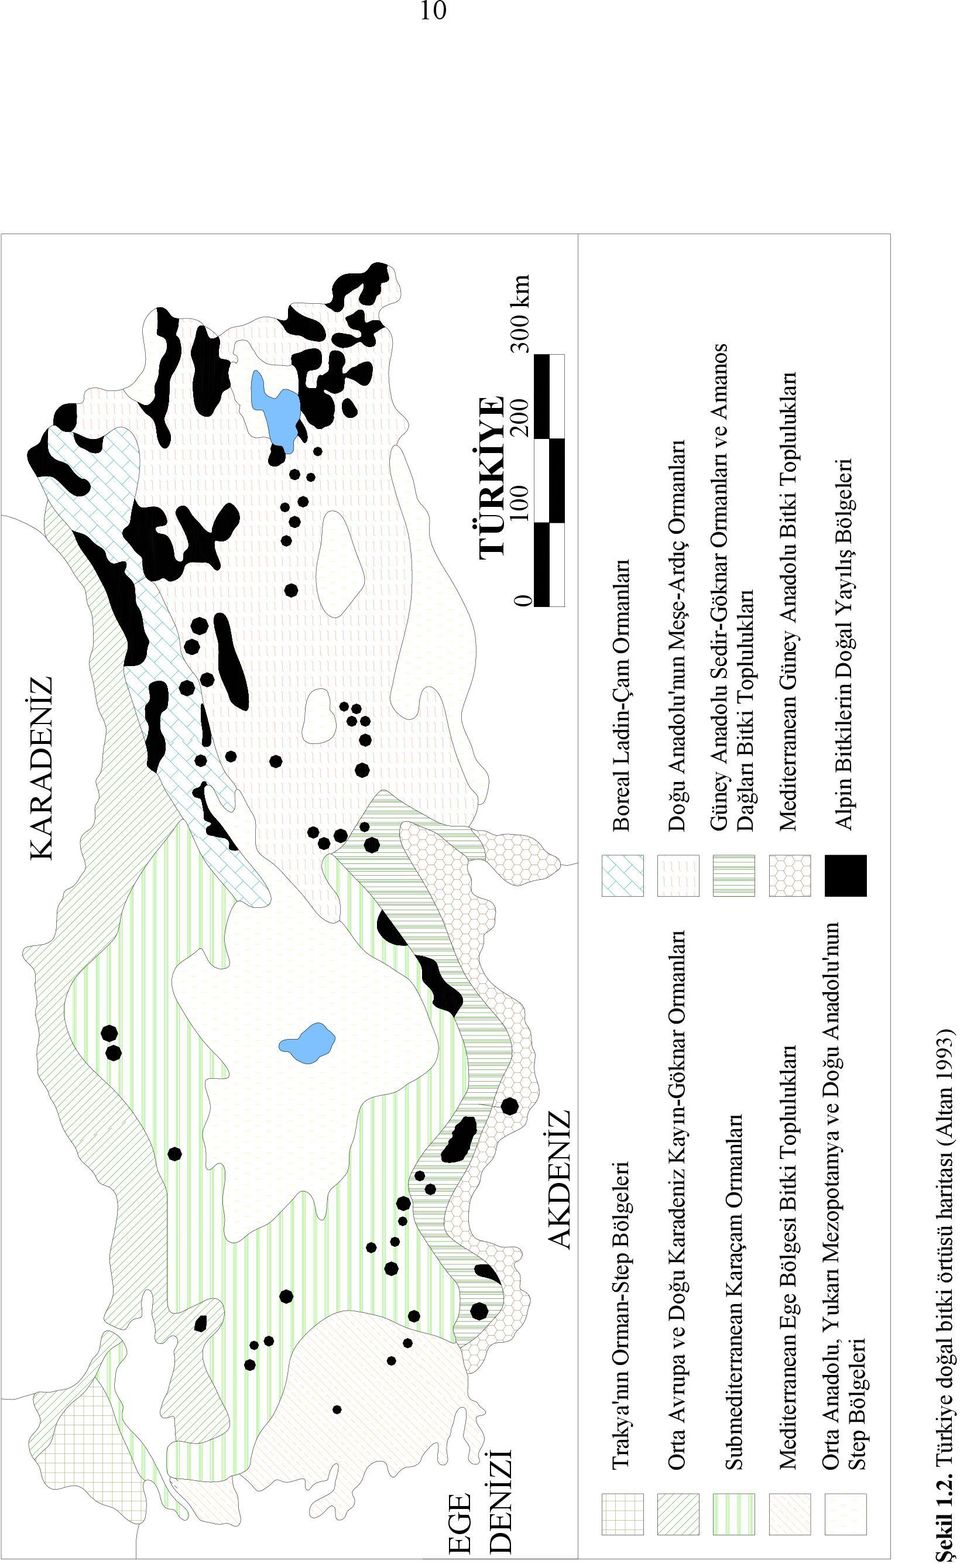 Türkiye doğal bitki örtüsü haritası (Altan 1993) KARADENİZ 0 TÜRKİYE 100 200 300 km Boreal Ladin-Çam Ormanları Doğu Anadolu'nun Meşe-Ardıç